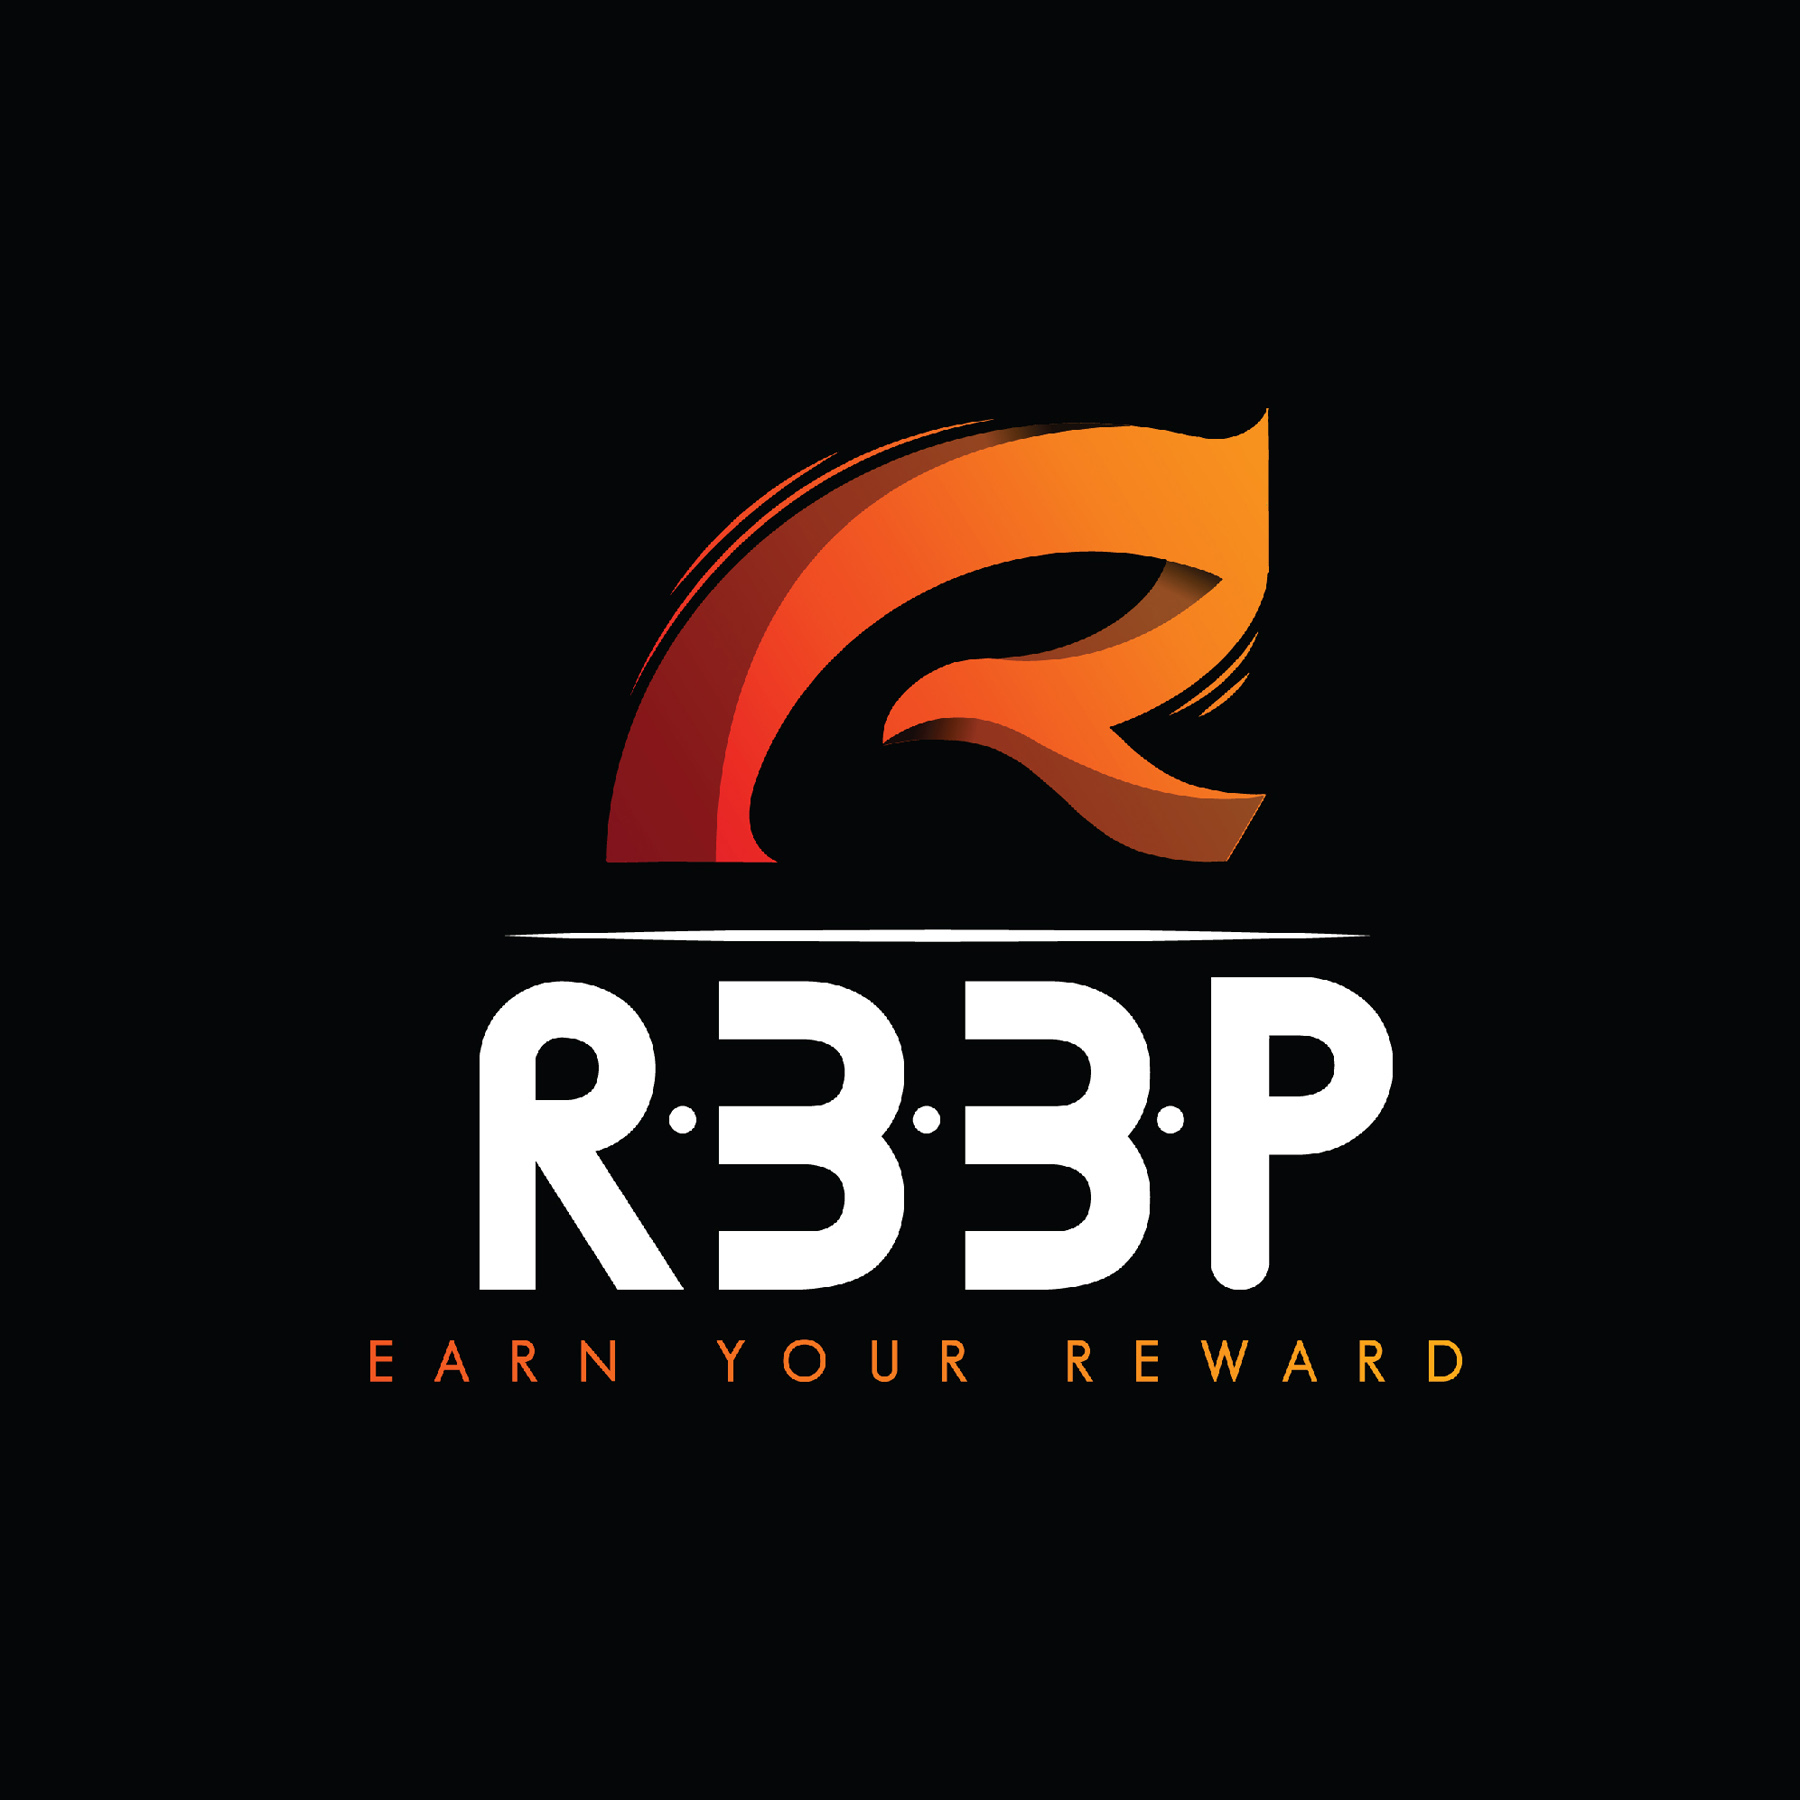 RBBP - Logo - 2